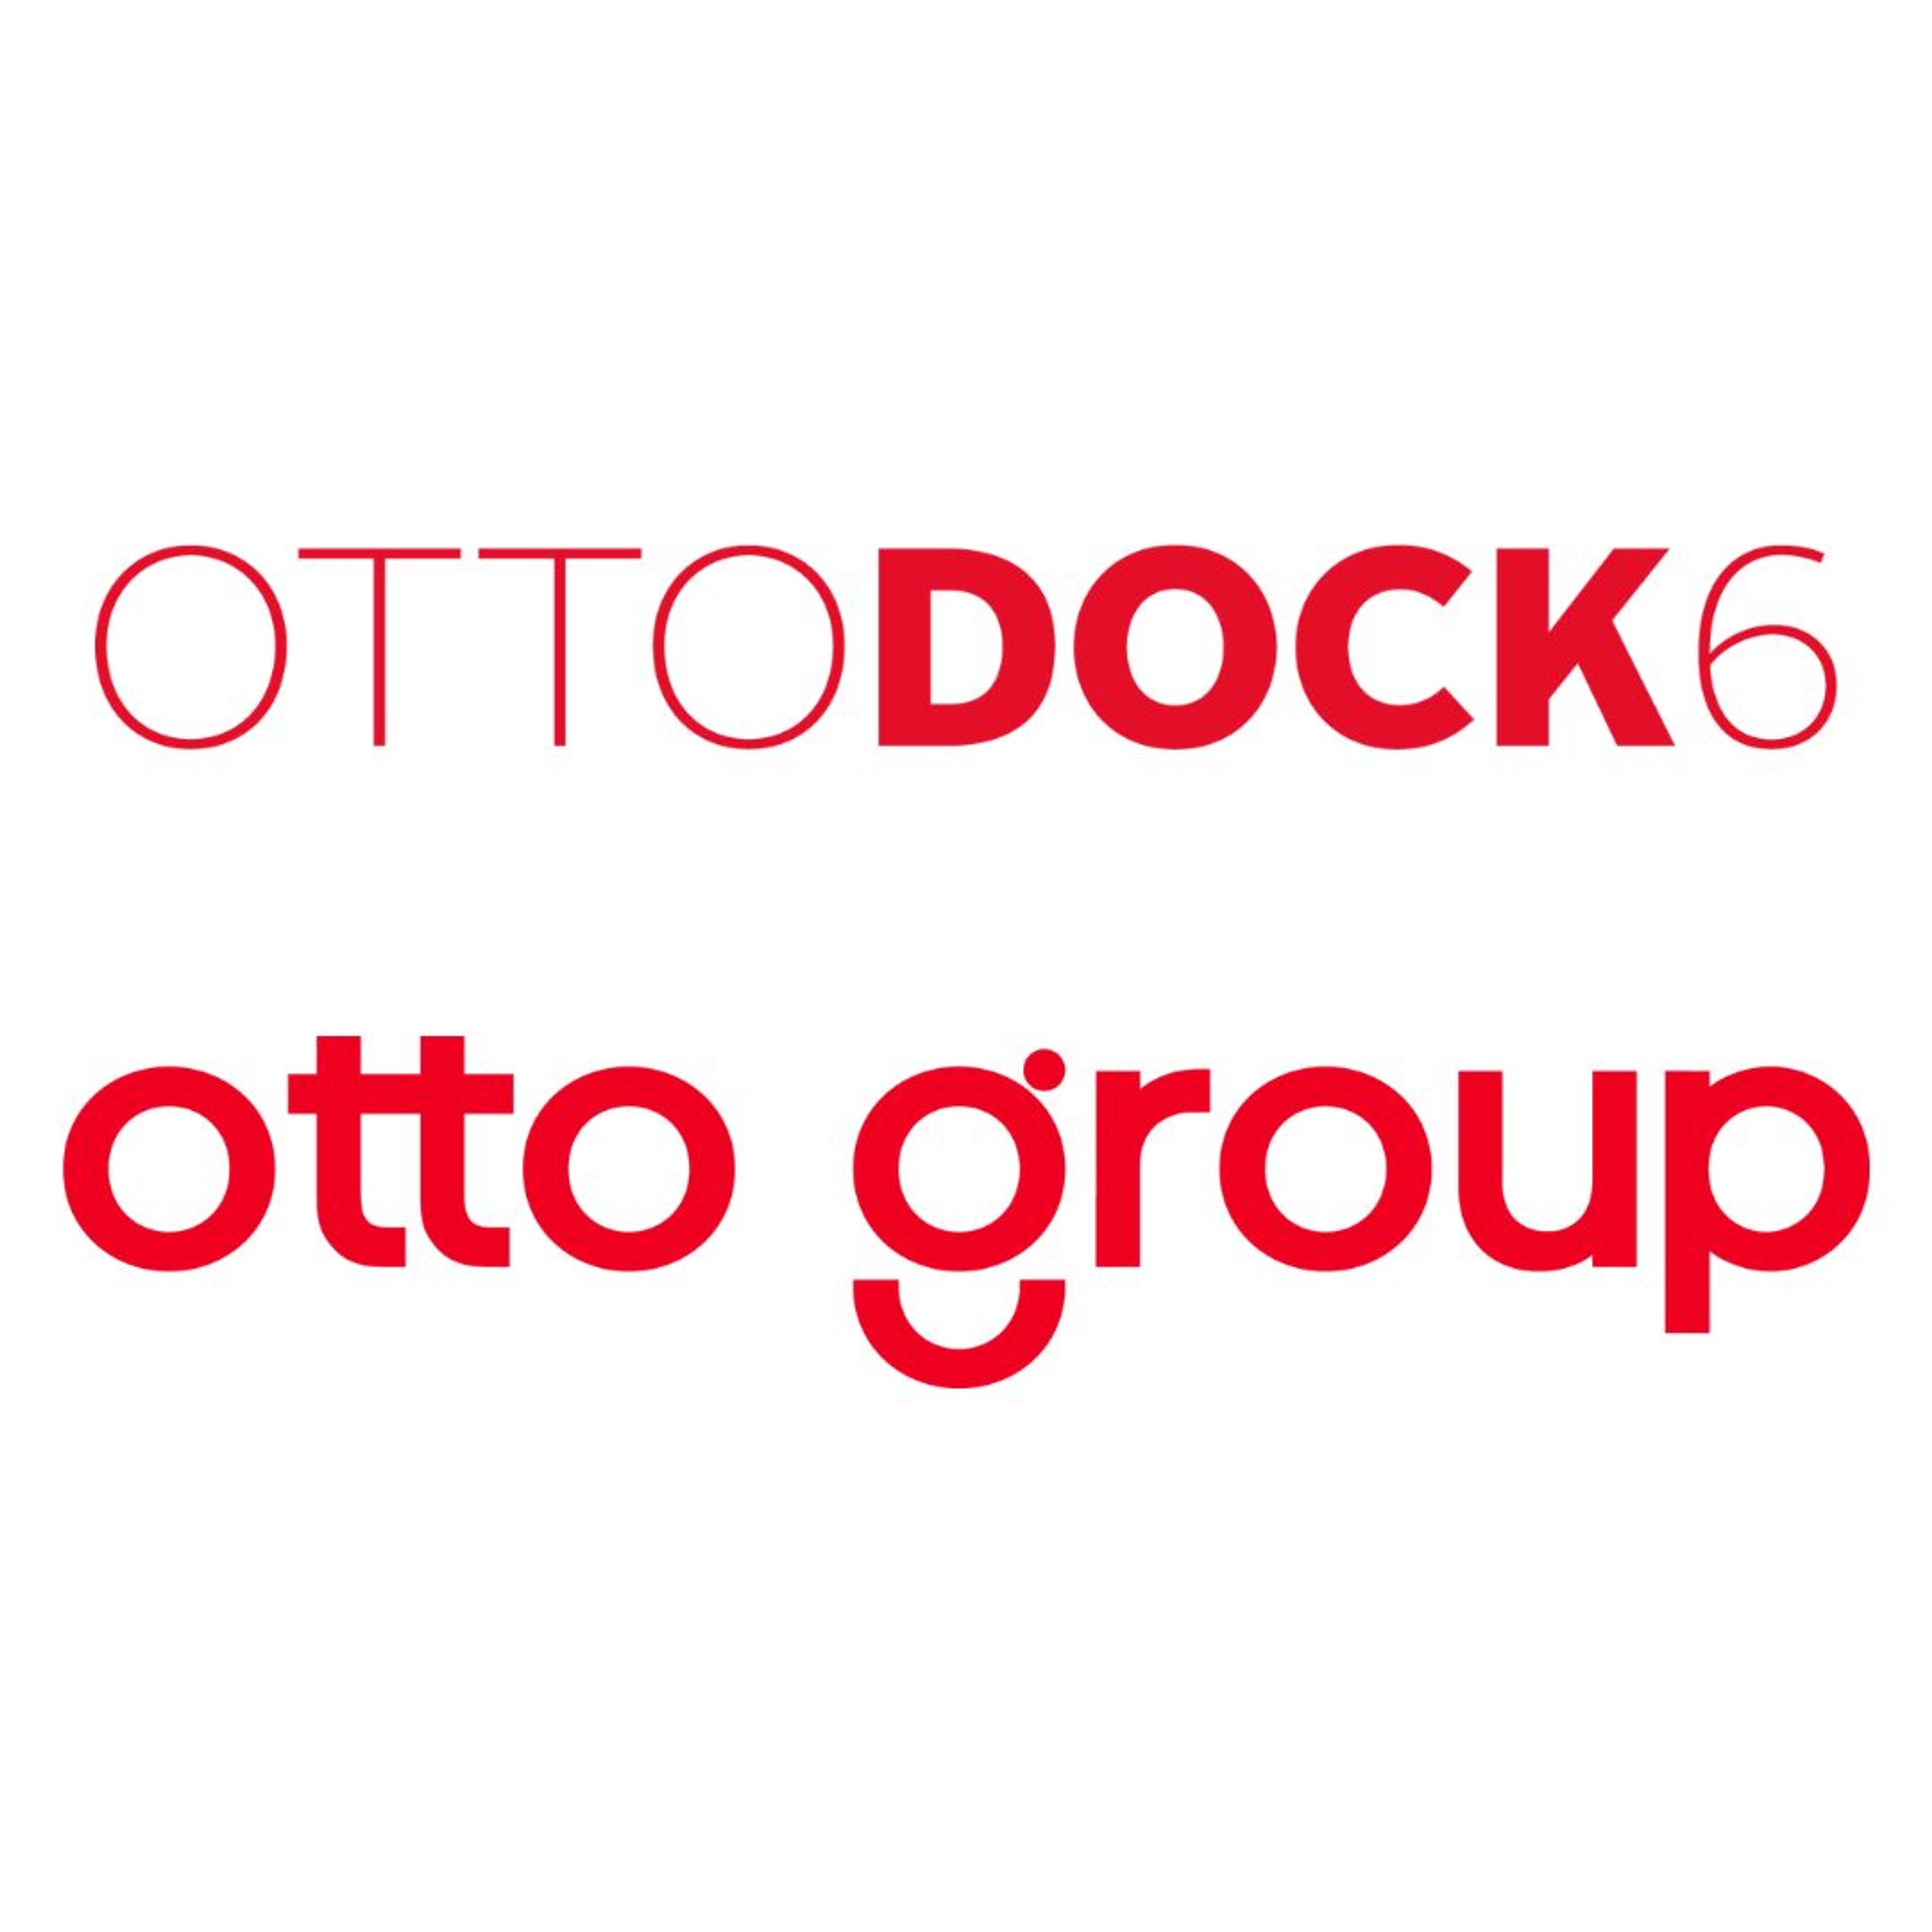 OTTO Dock6 und Group Logo